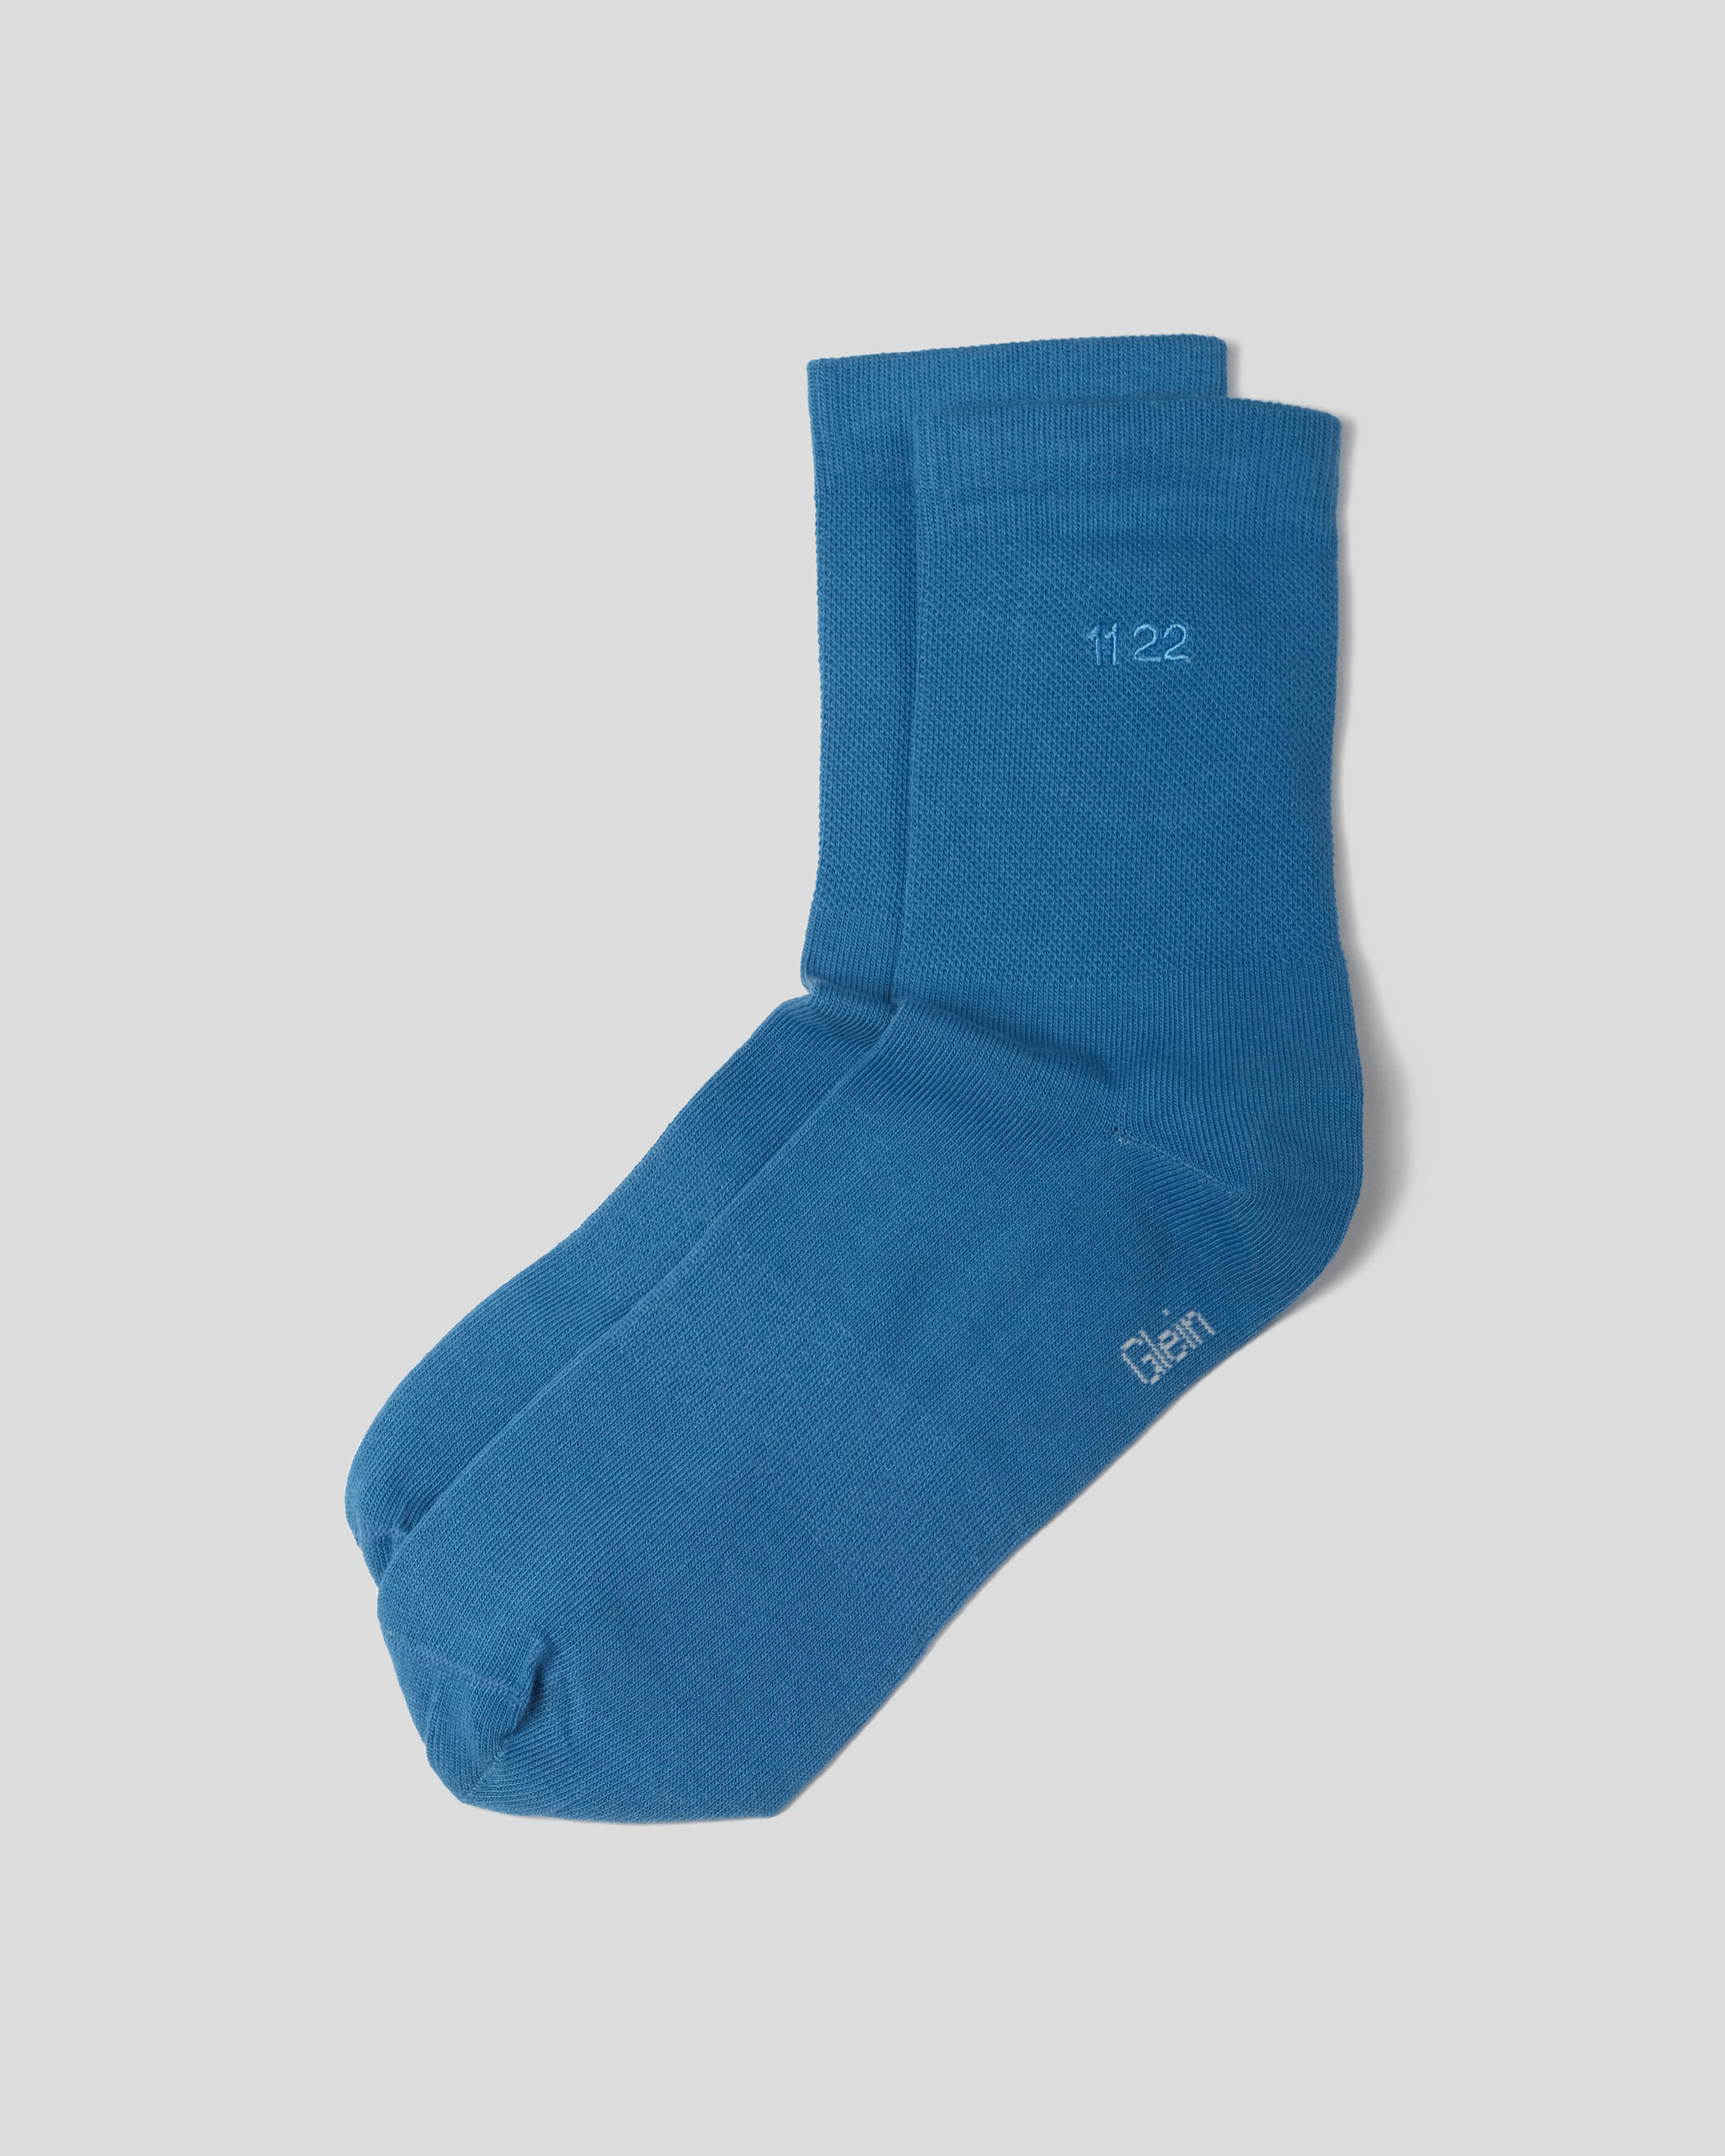 Glein - Socks - celtic blue